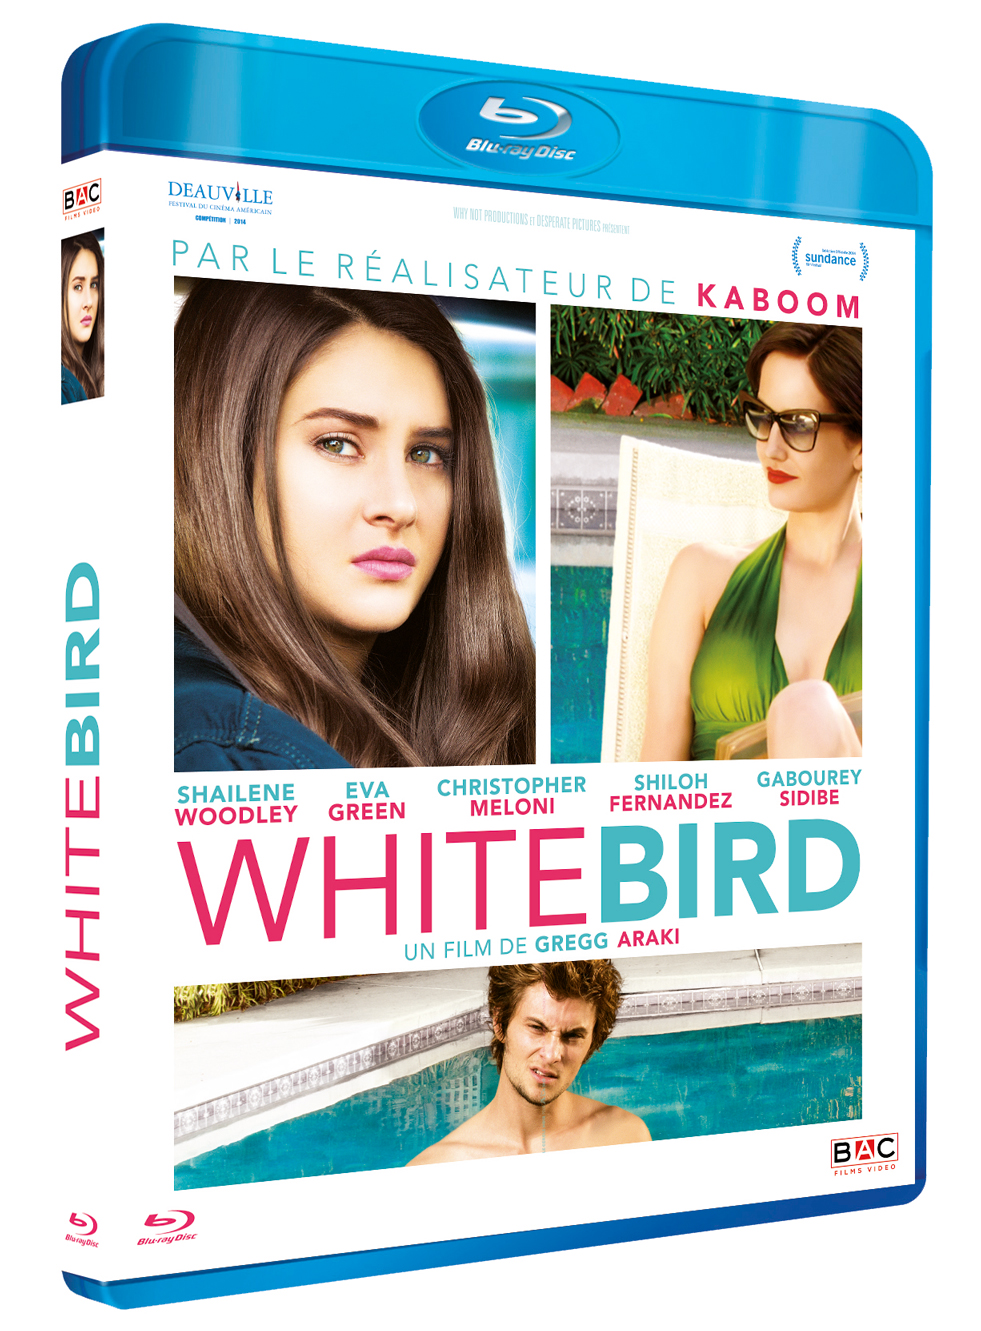 White bird, le nouveau film de Gregg ARAKI en BRD/DVD le 17 mars 2015